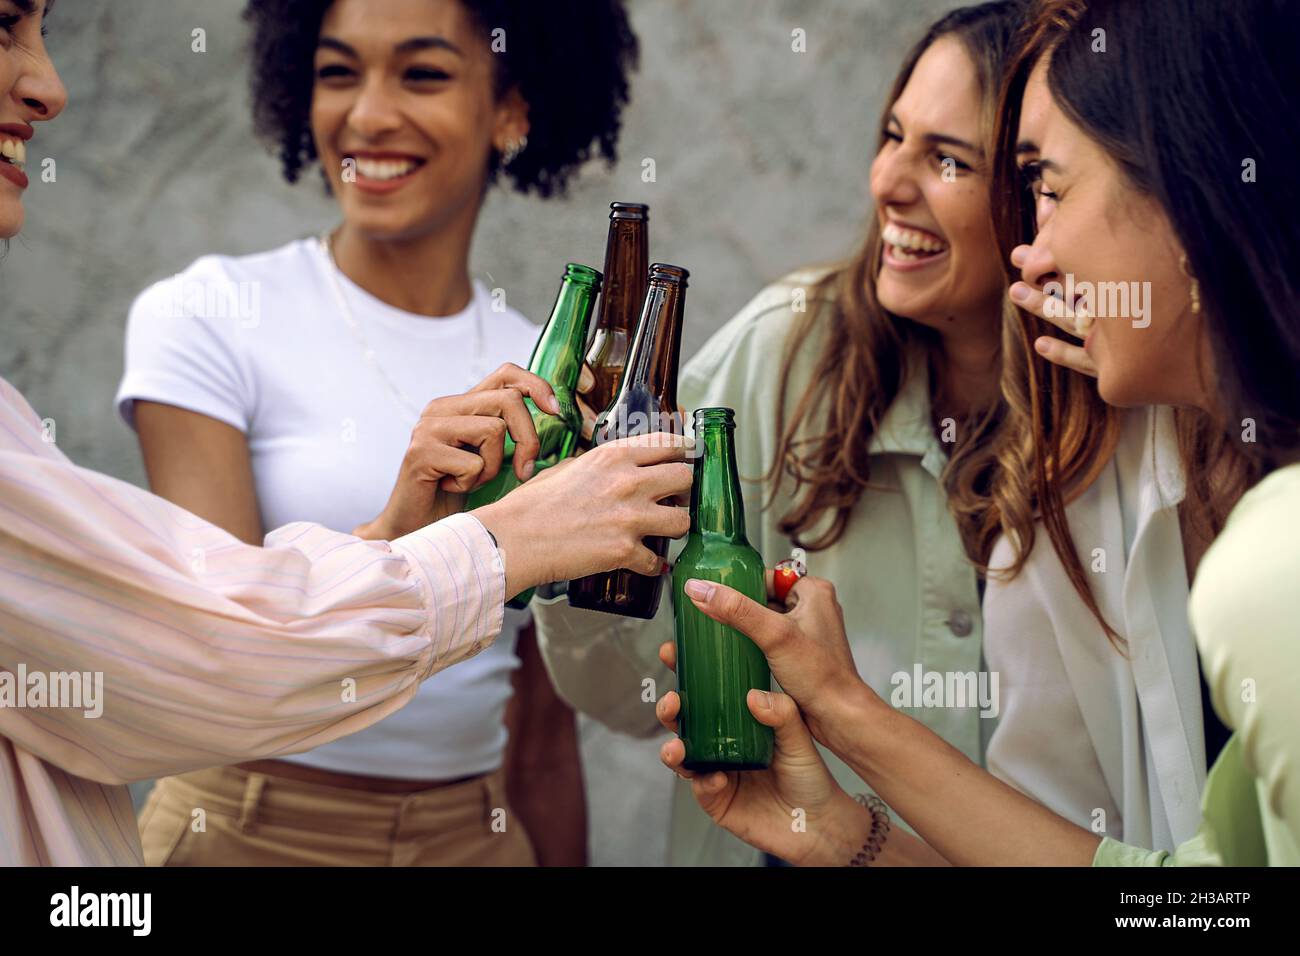 Les copines toasts des bouteilles de bière - concept de l'insouciance et de la convivialité - femmes seulement Banque D'Images